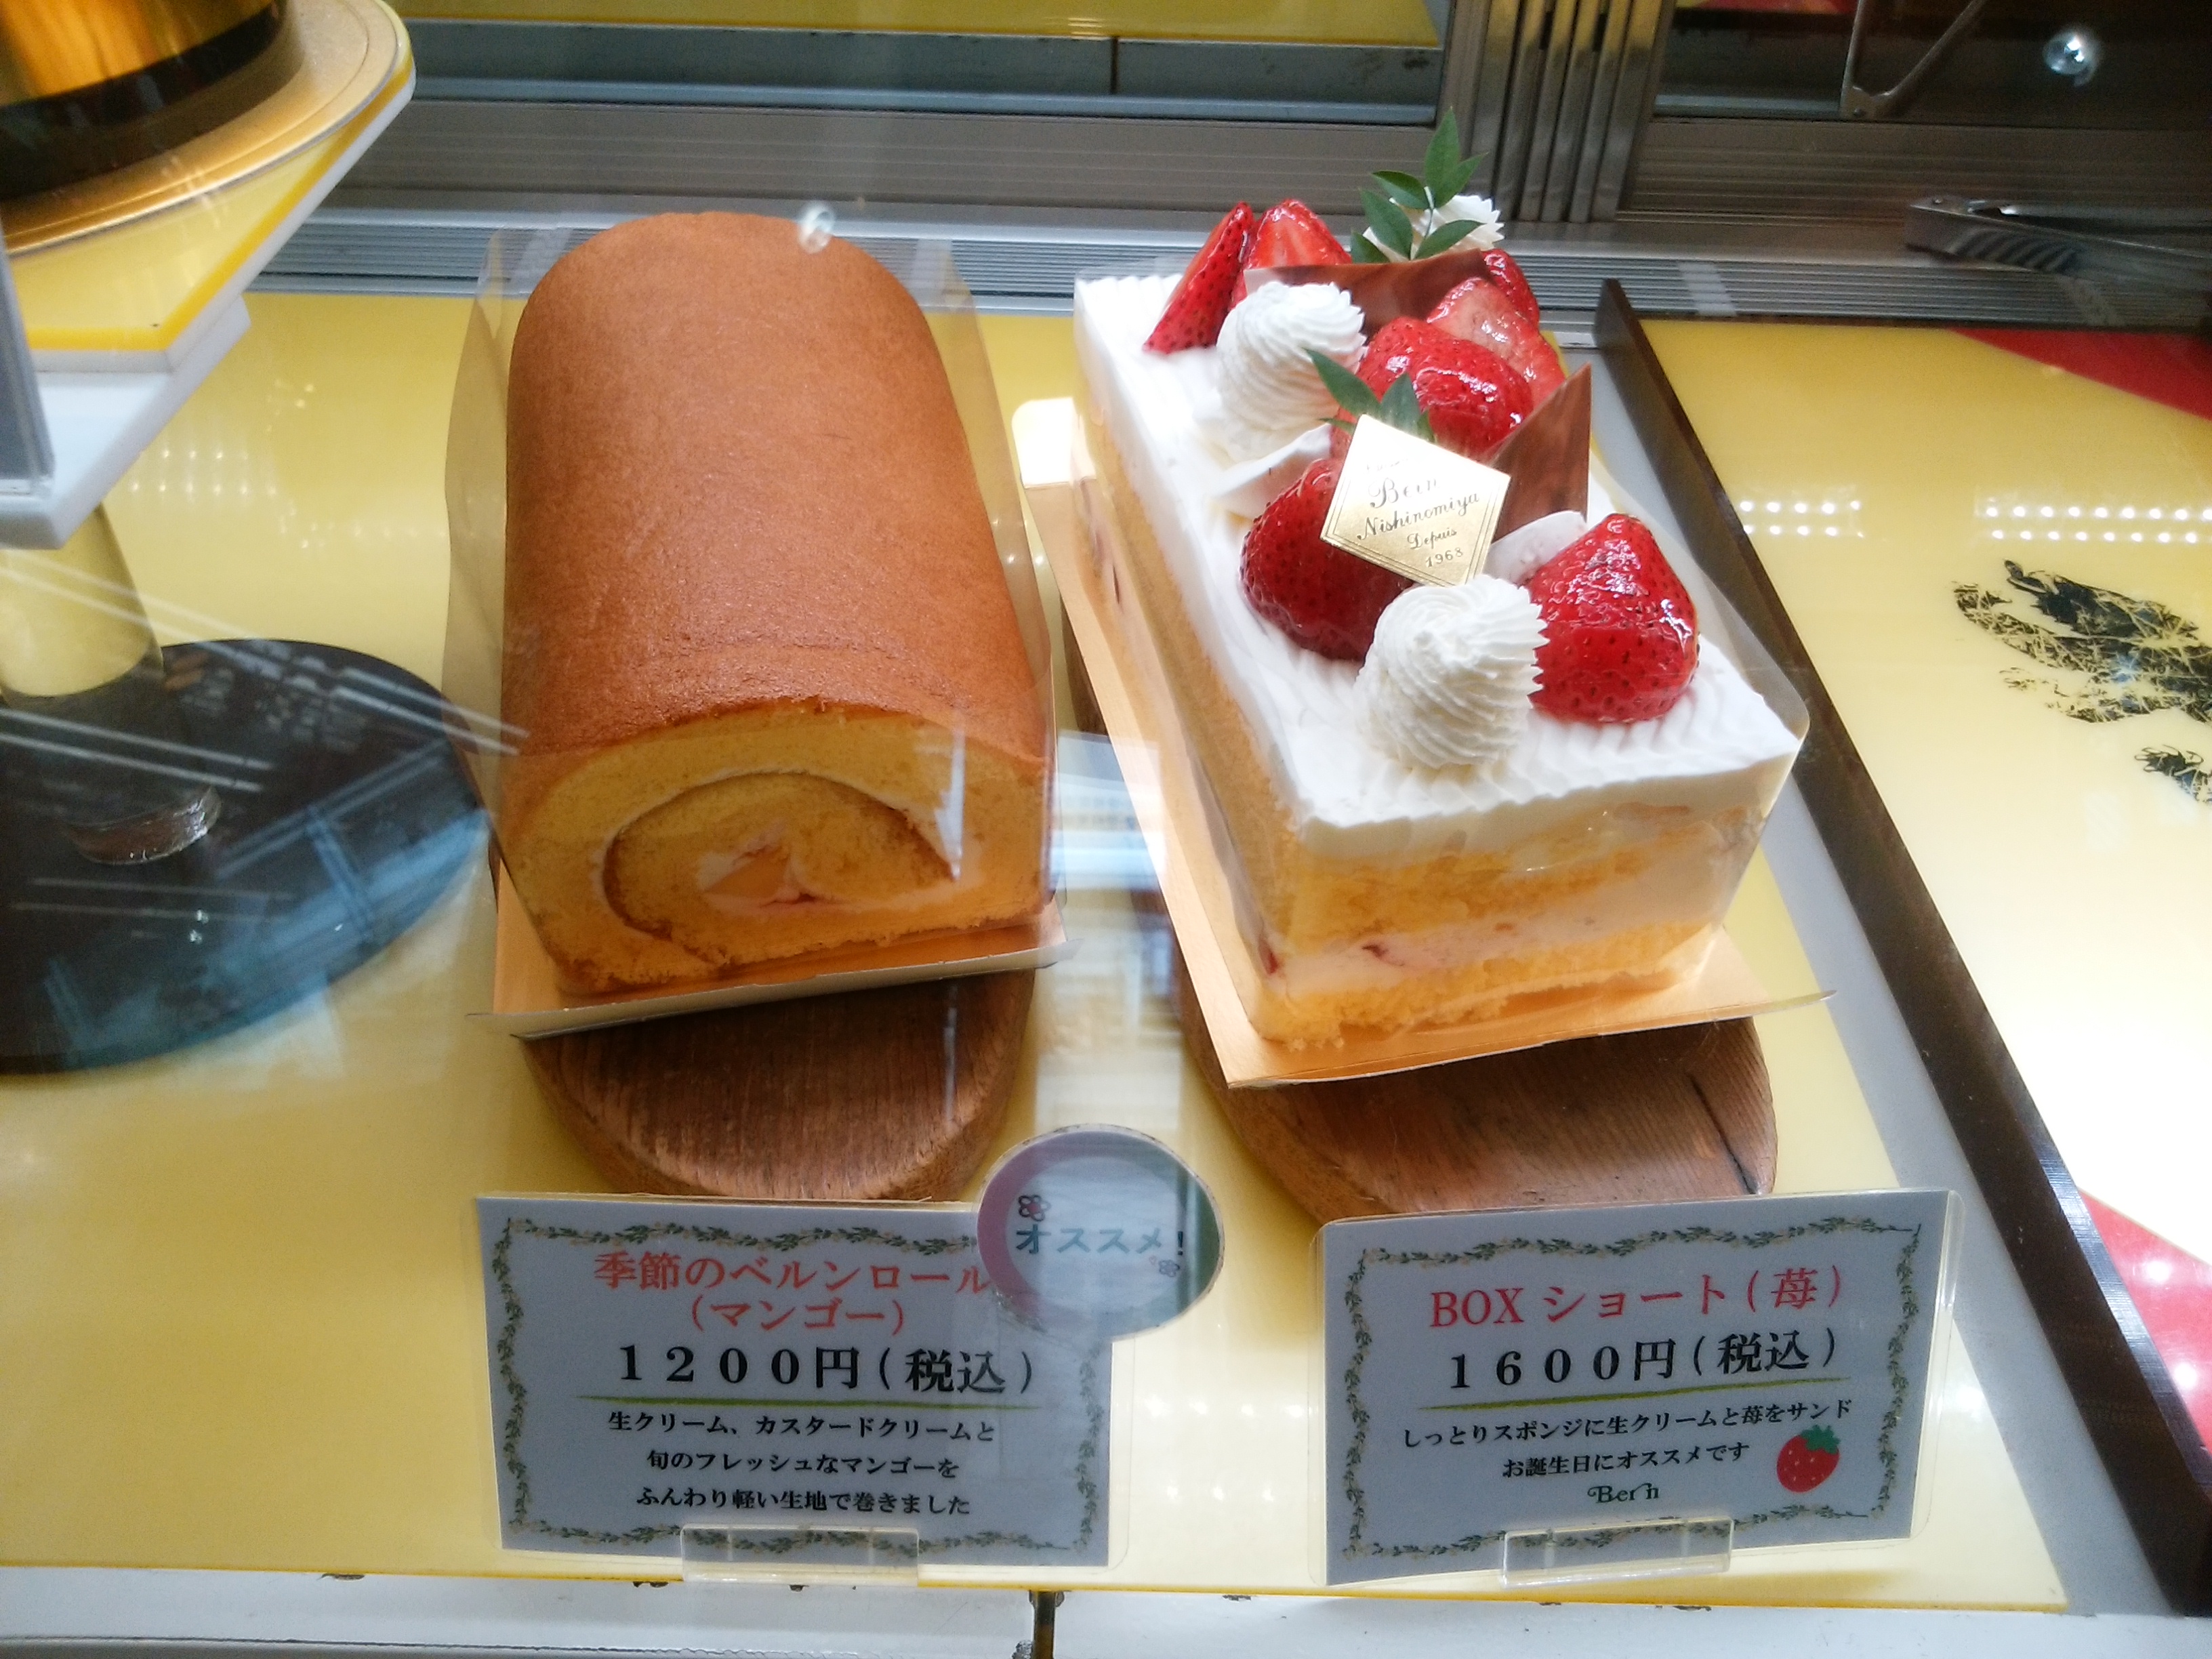 ベルン 兵庫県西宮市 三度の飯よりケーキ好き 三重県にもっとケーキバイキングを